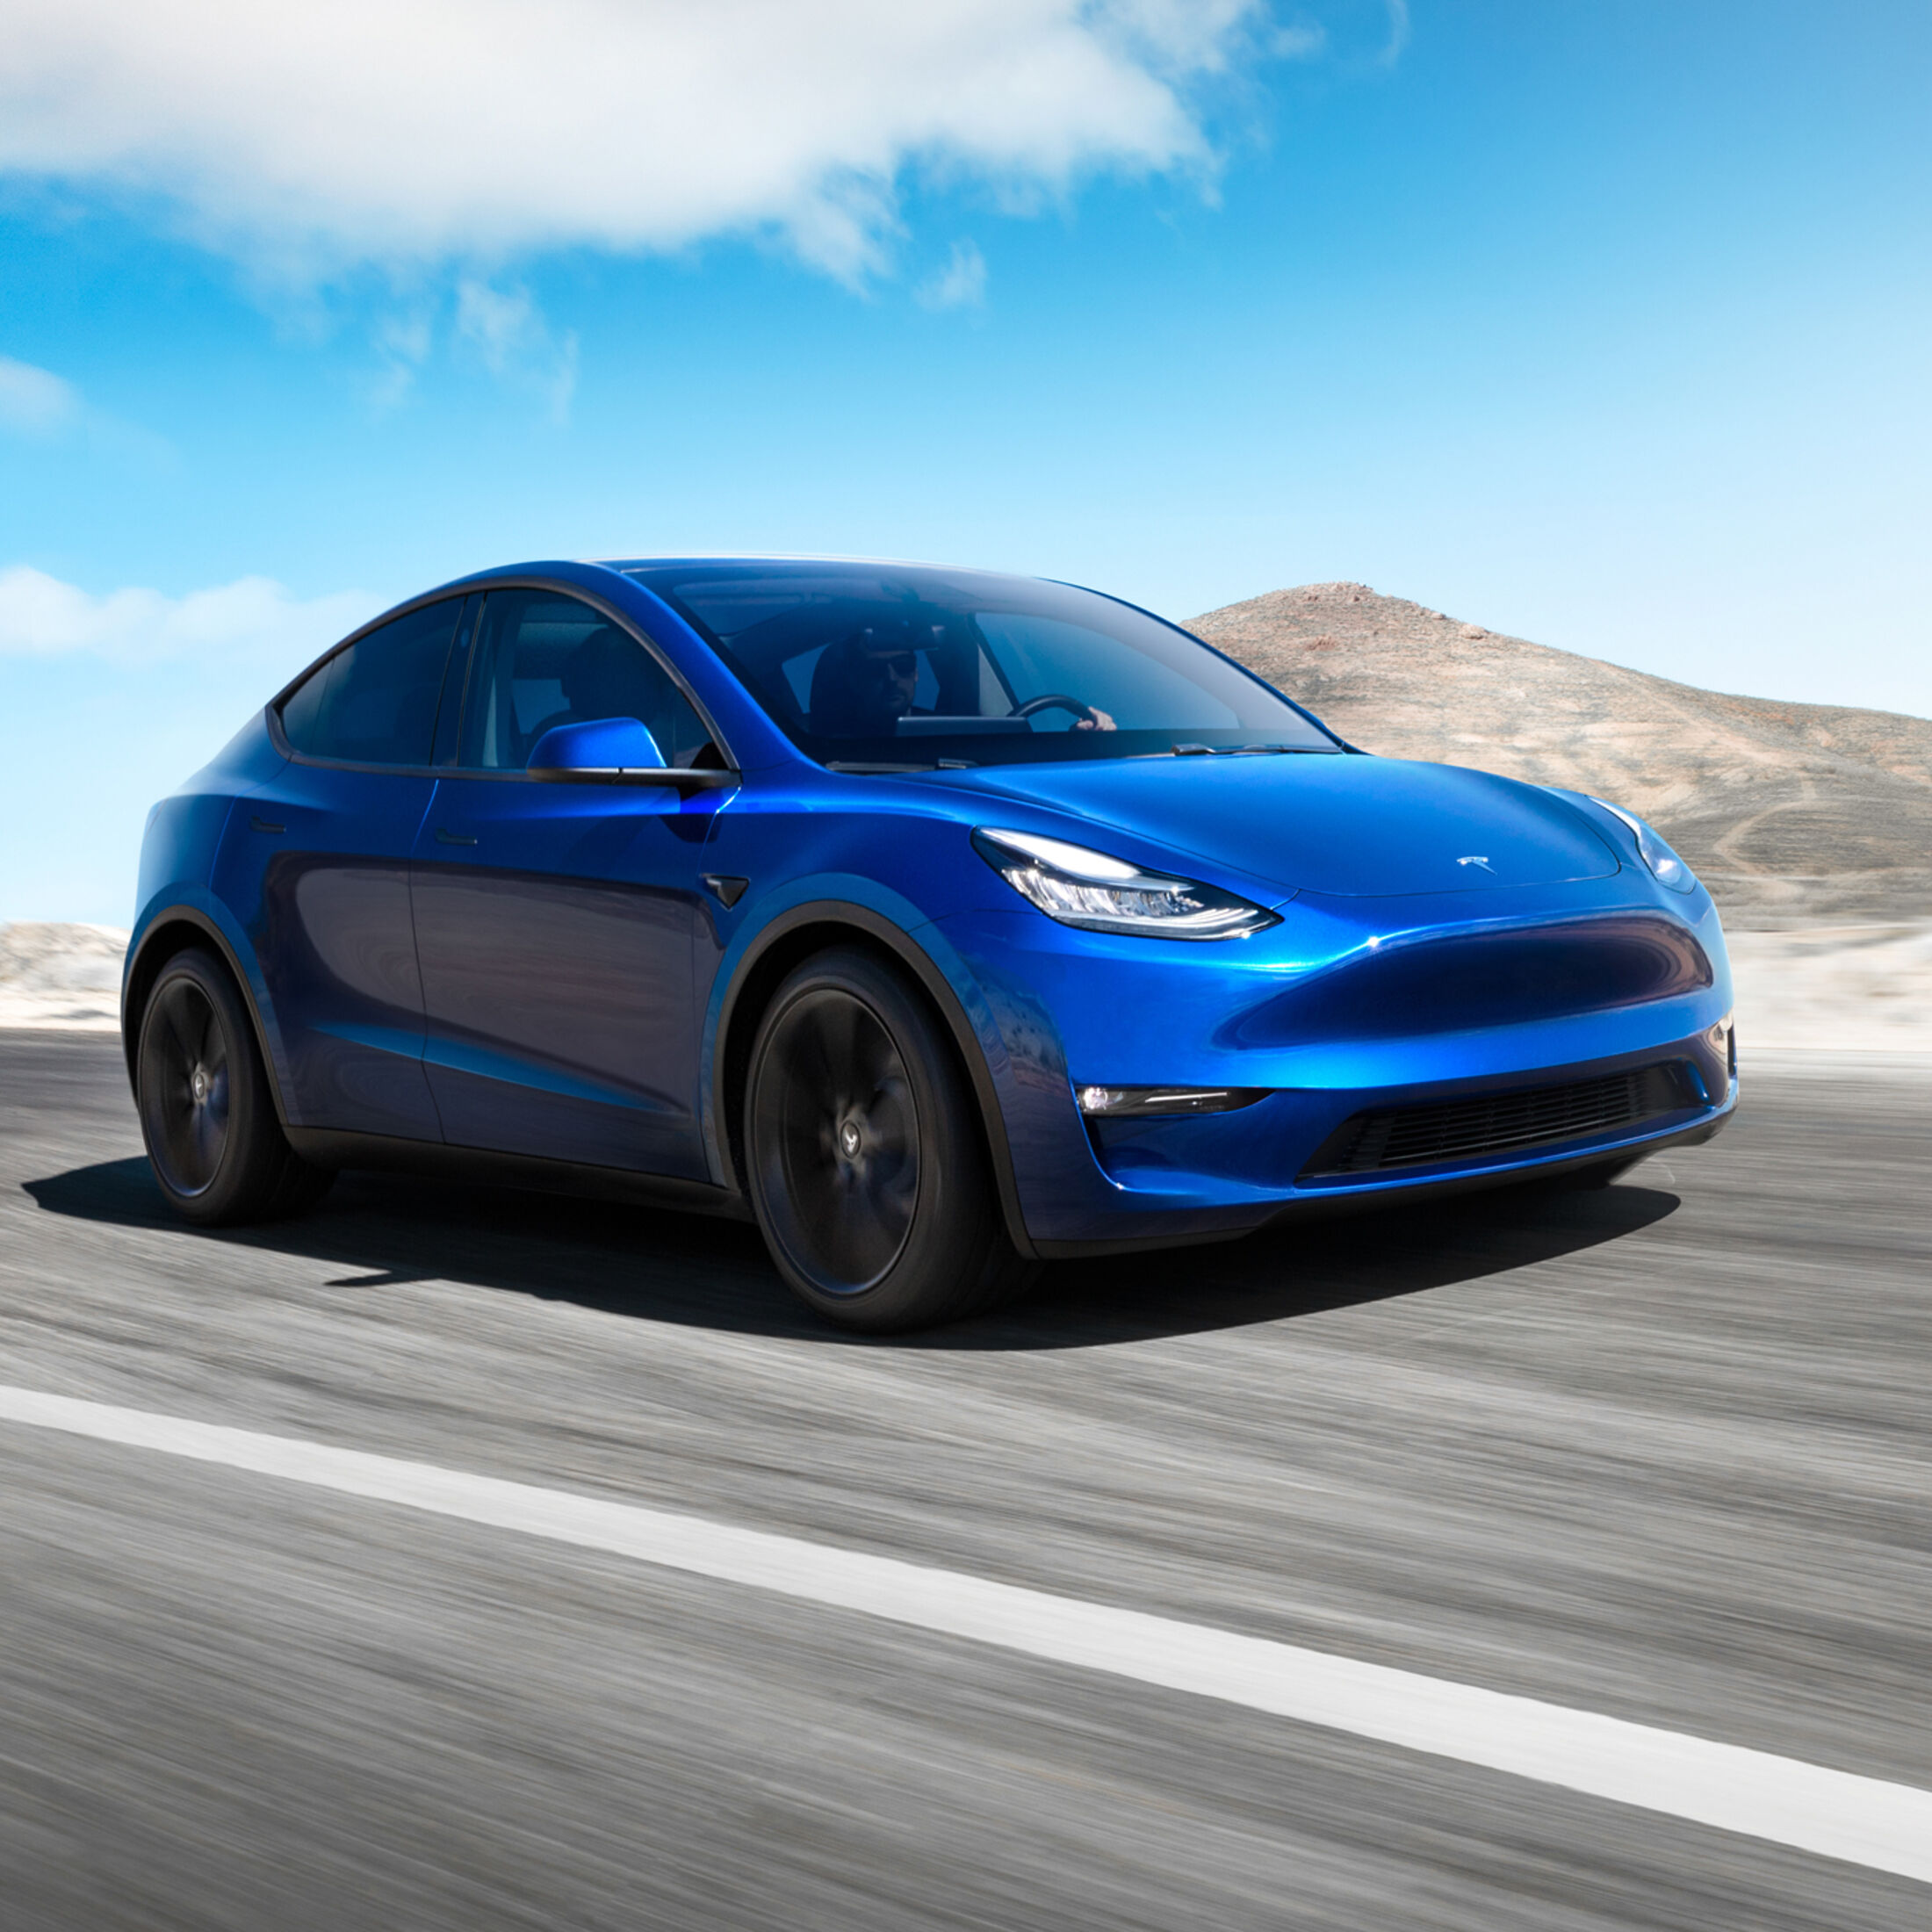 https://imgr1.auto-motor-und-sport.de/Tesla-Model-Y-2020--jsonLd1x1-74fe6a54-1436907.jpg